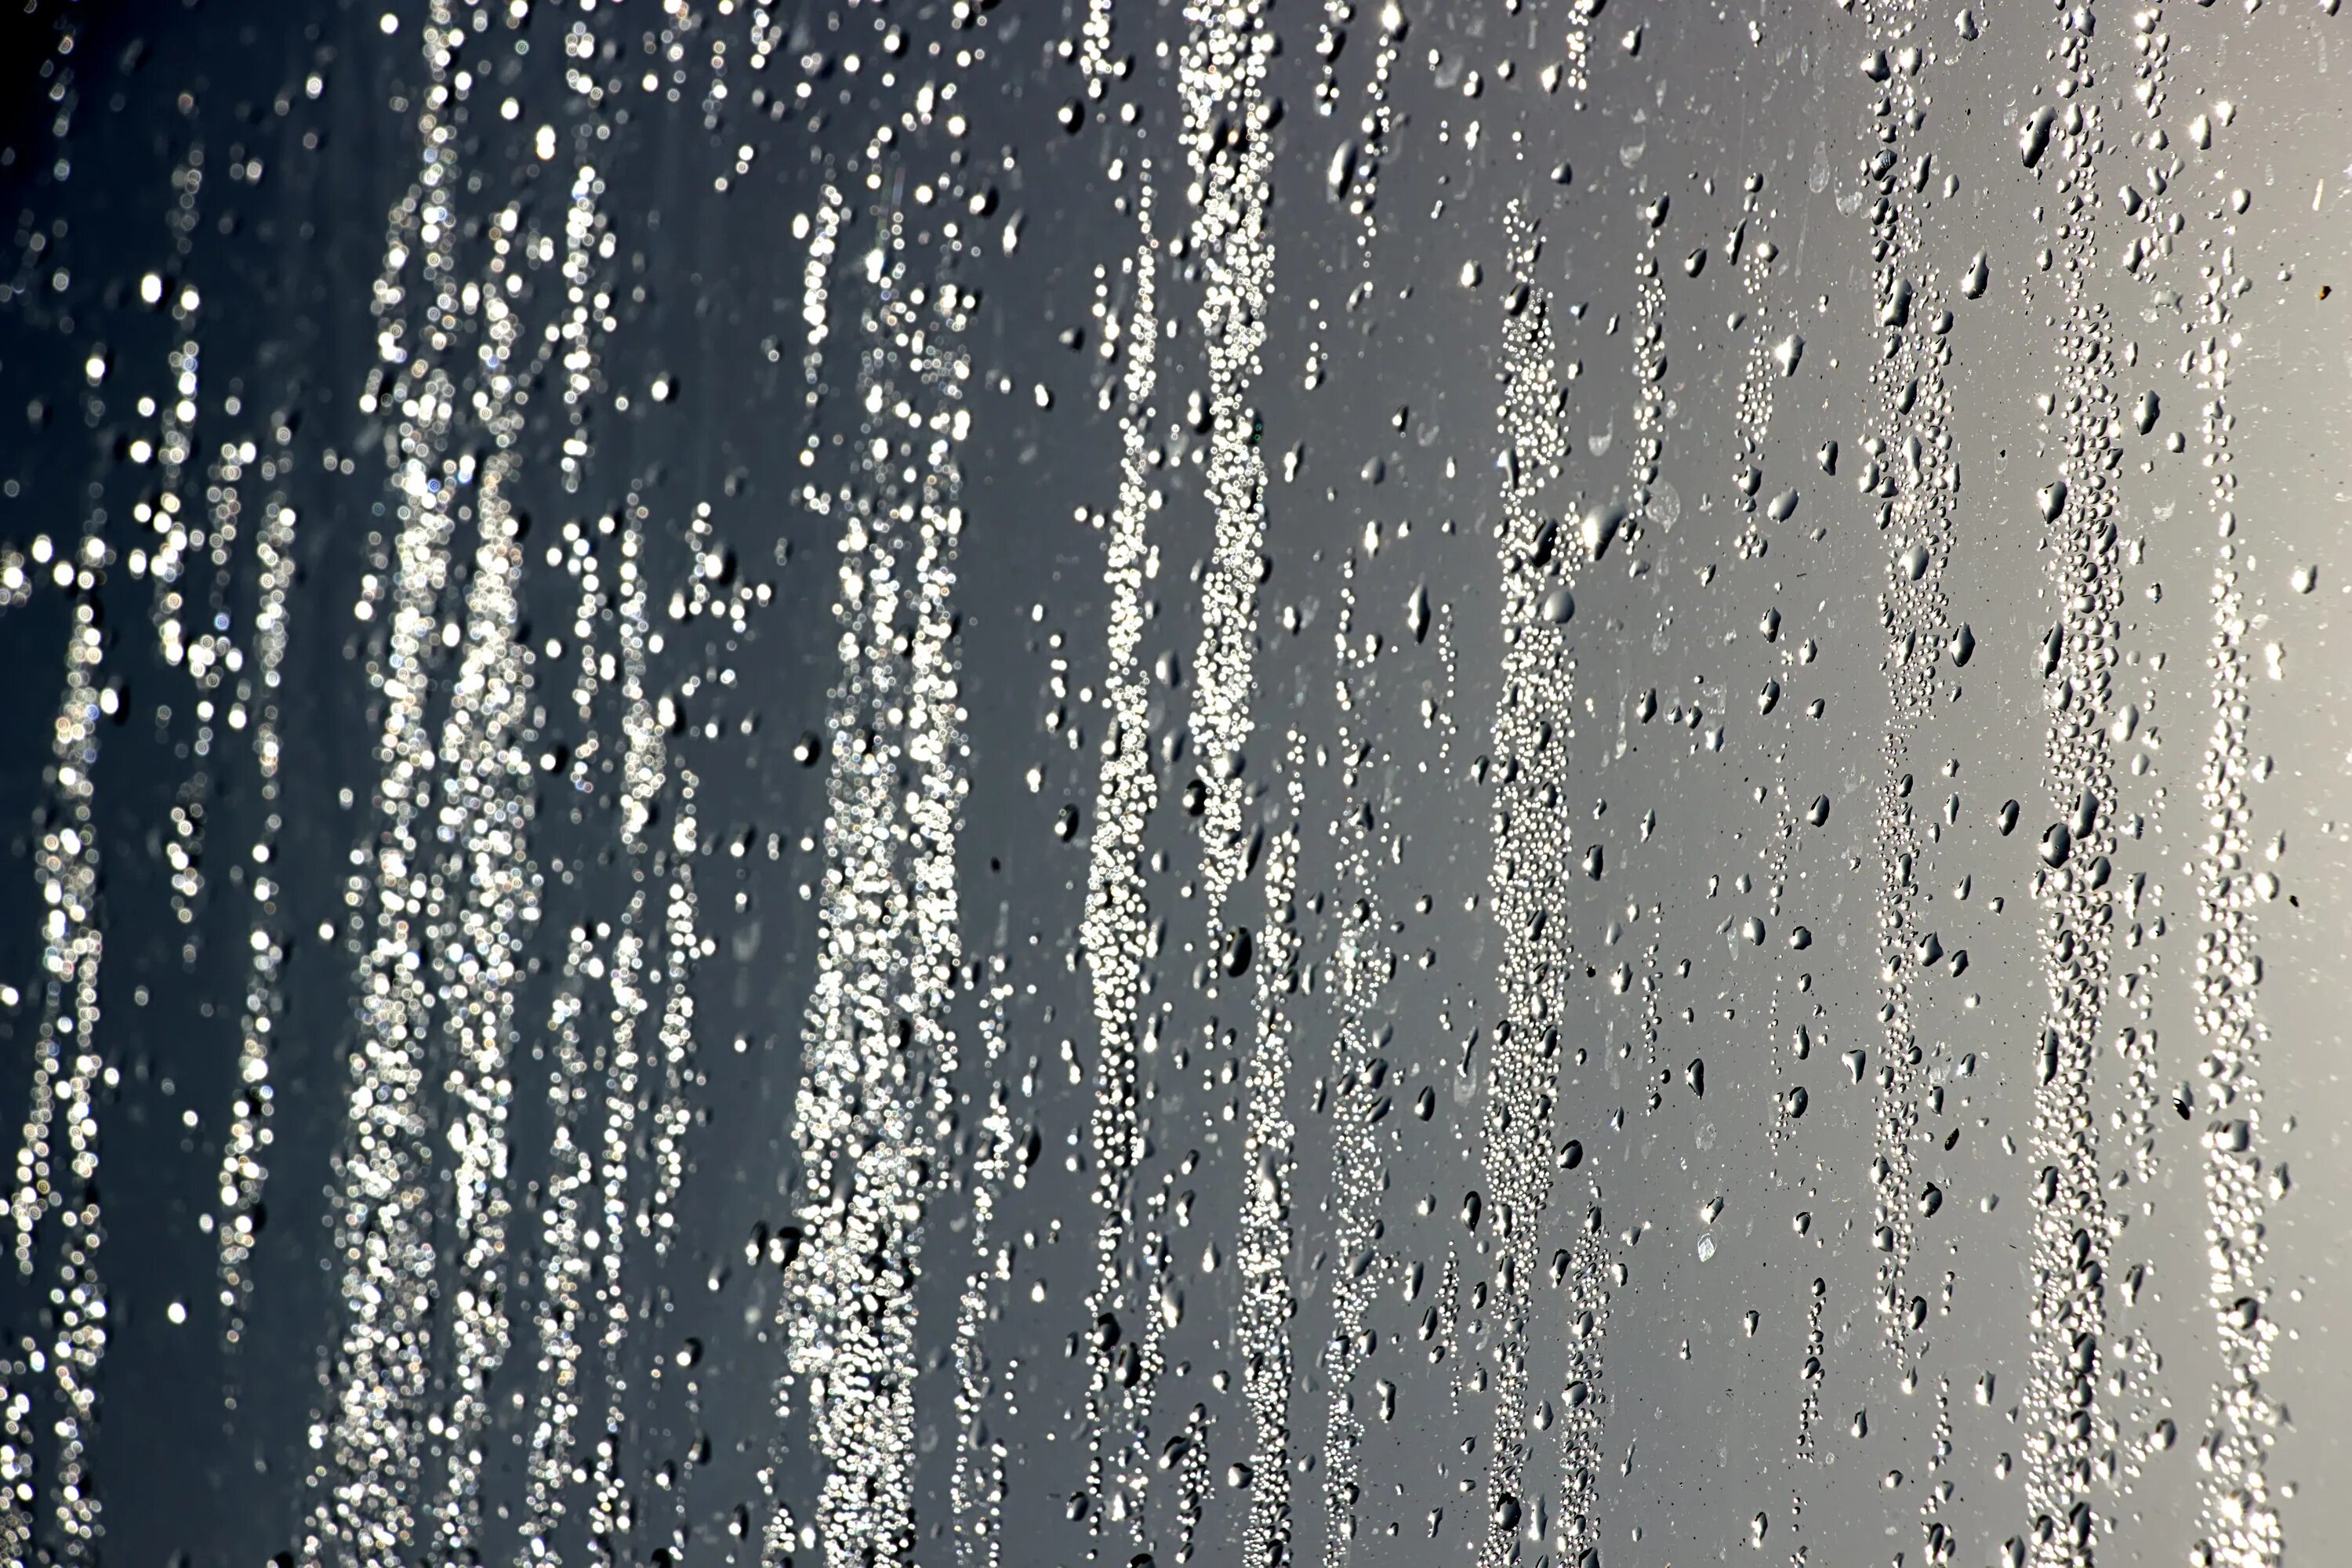 Запотевшее стекло дождь. Капли на стекле. Капли стекают по стеклу. Струи дождя. Струи дождя на стекле.